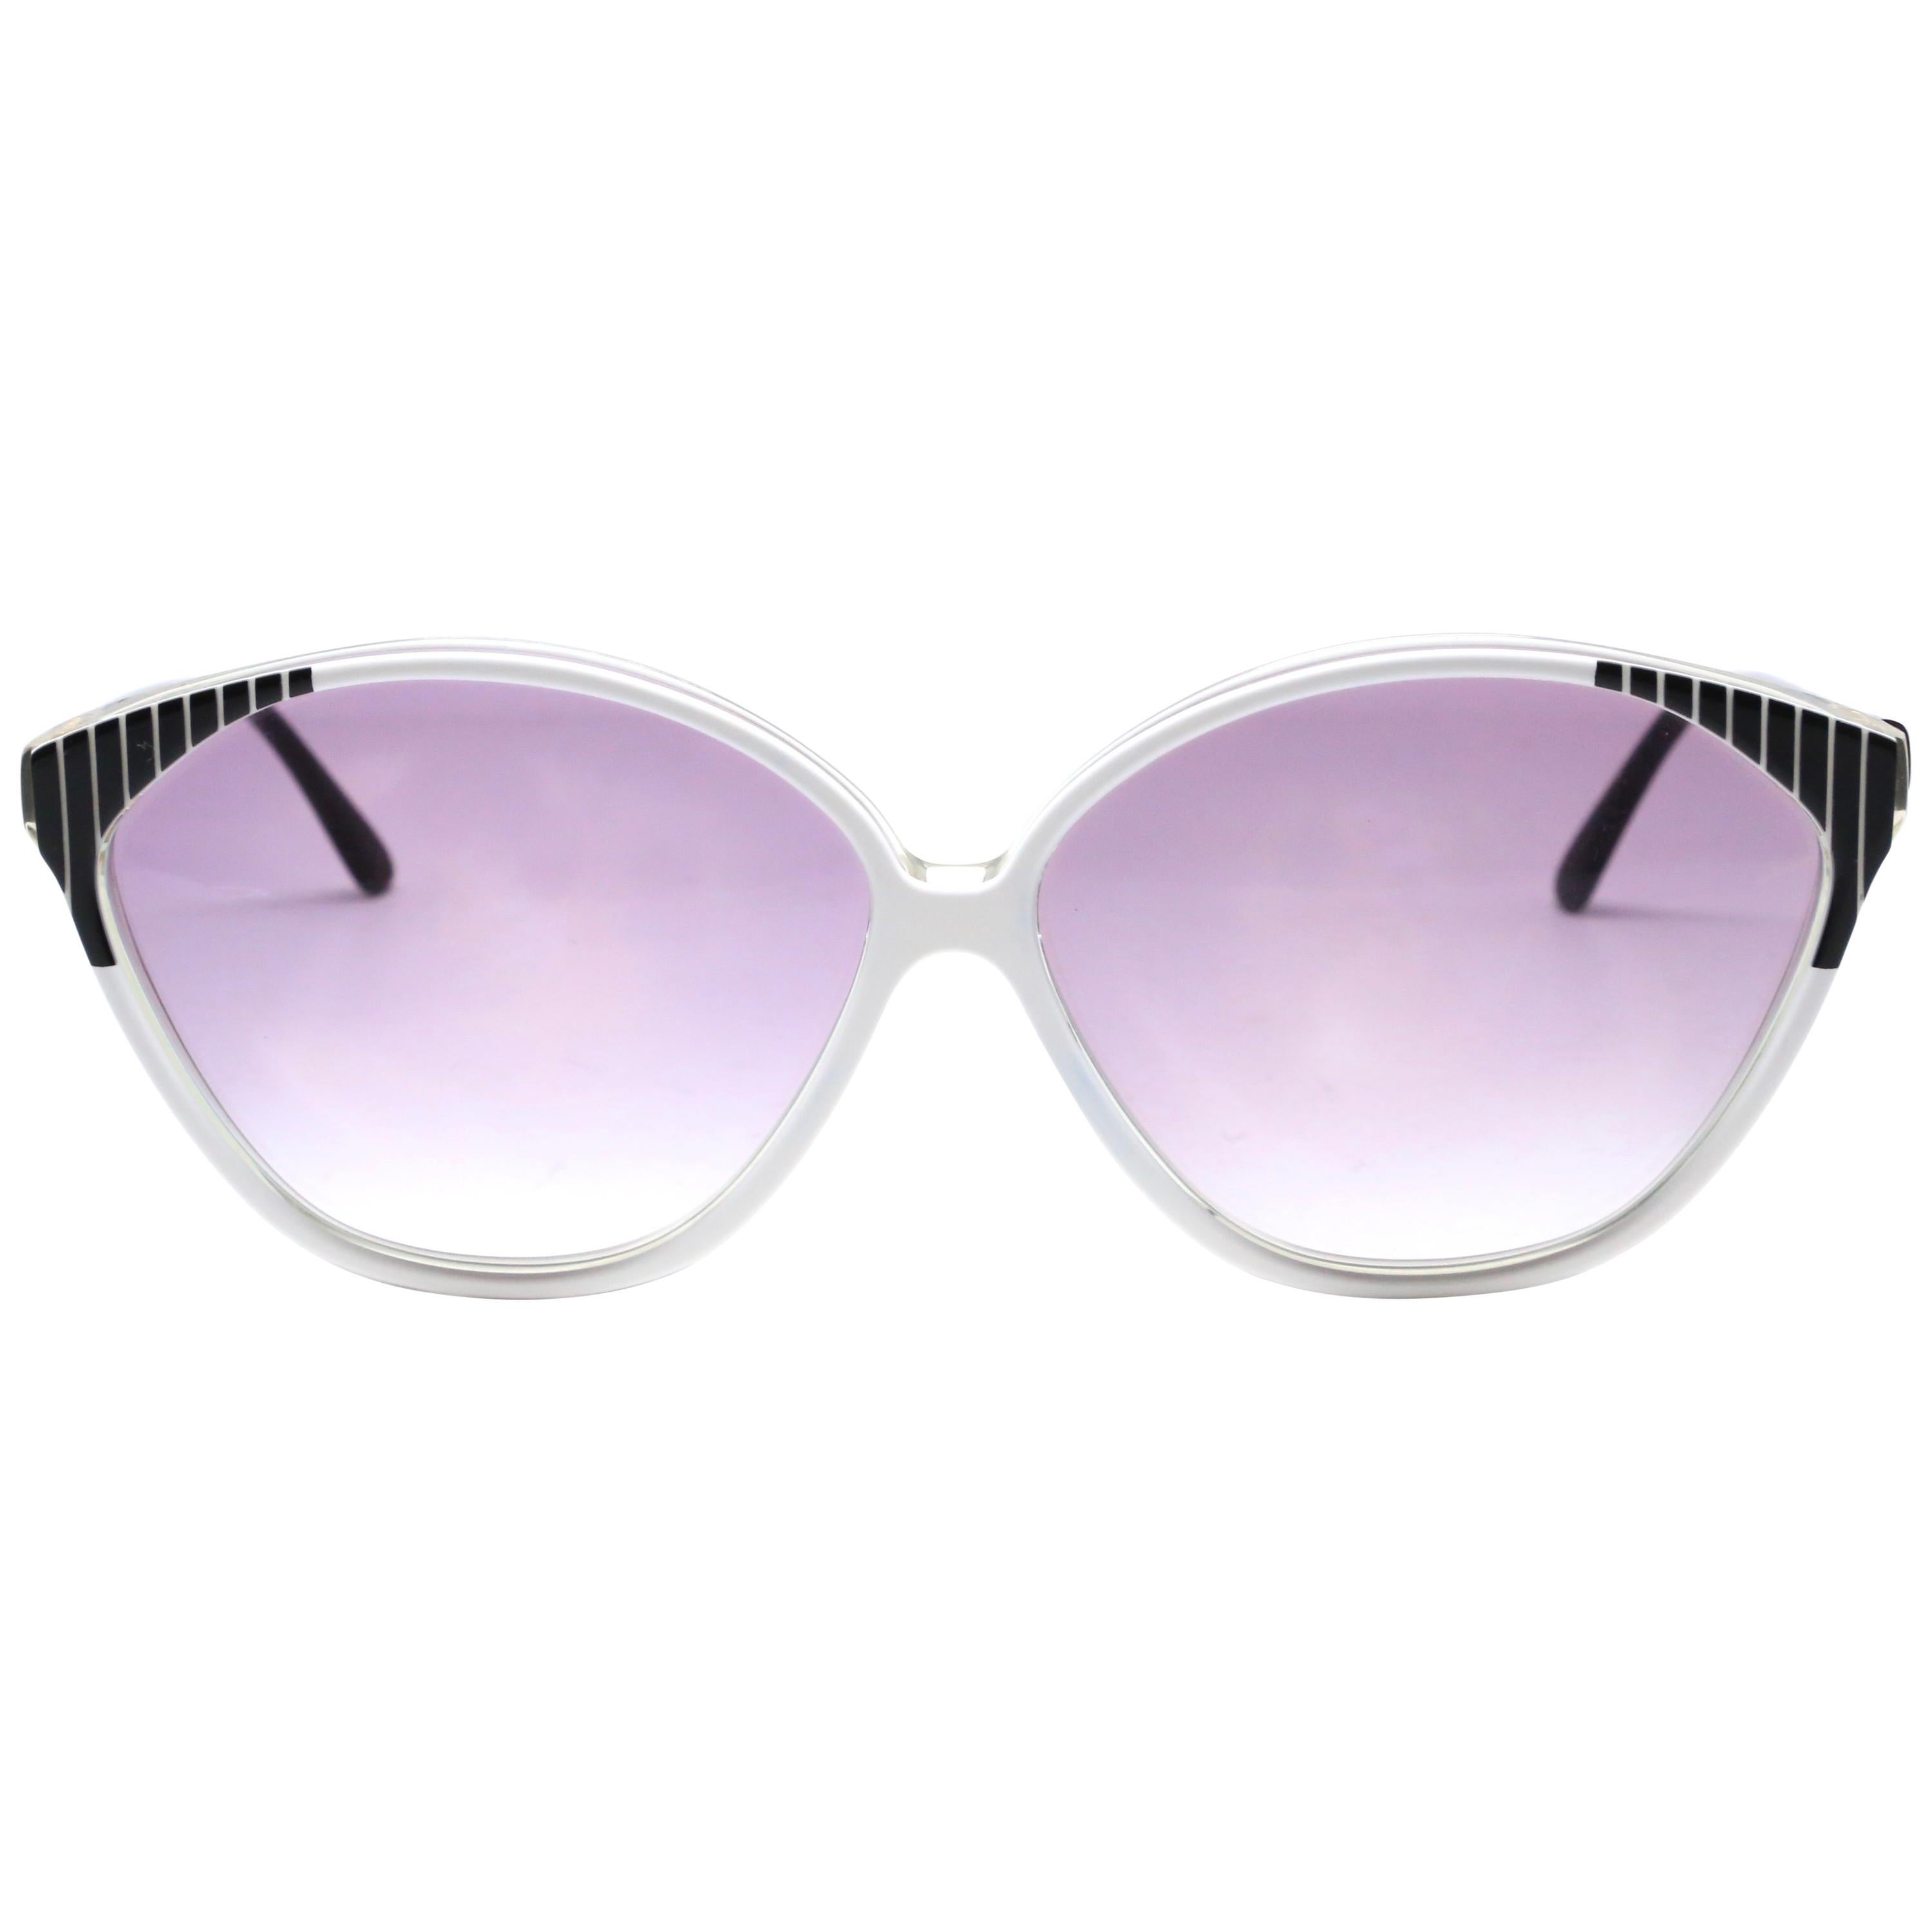 1980's BALENCIAGA black and white plastic sunglasses For Sale